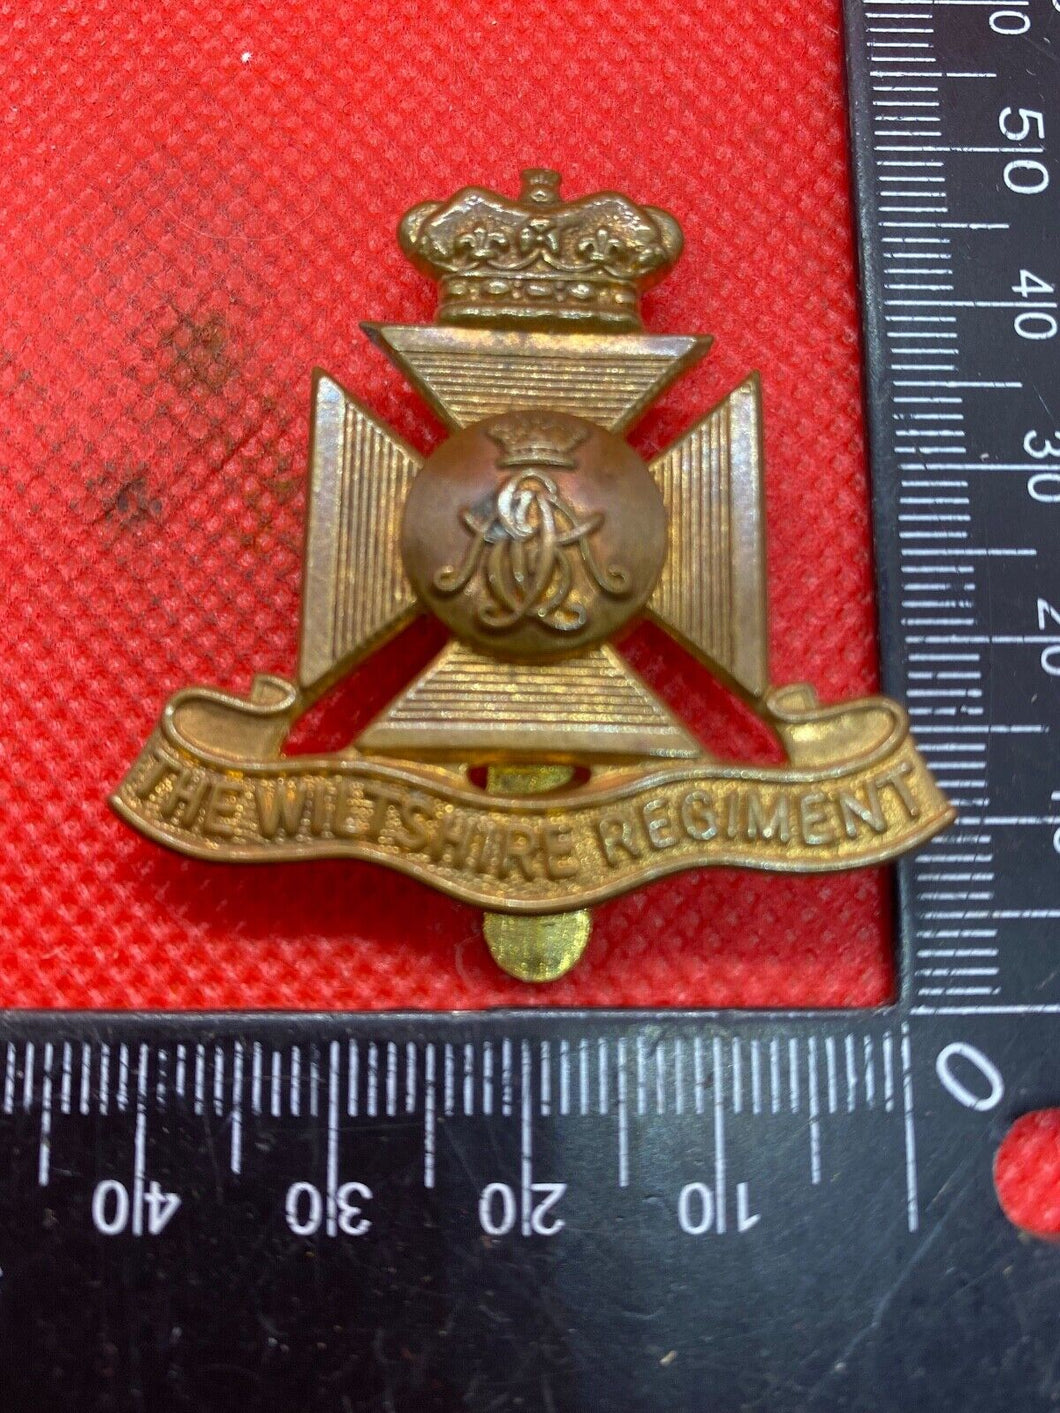 The Wiltshire Regiment Victorian Crown Cap Badge